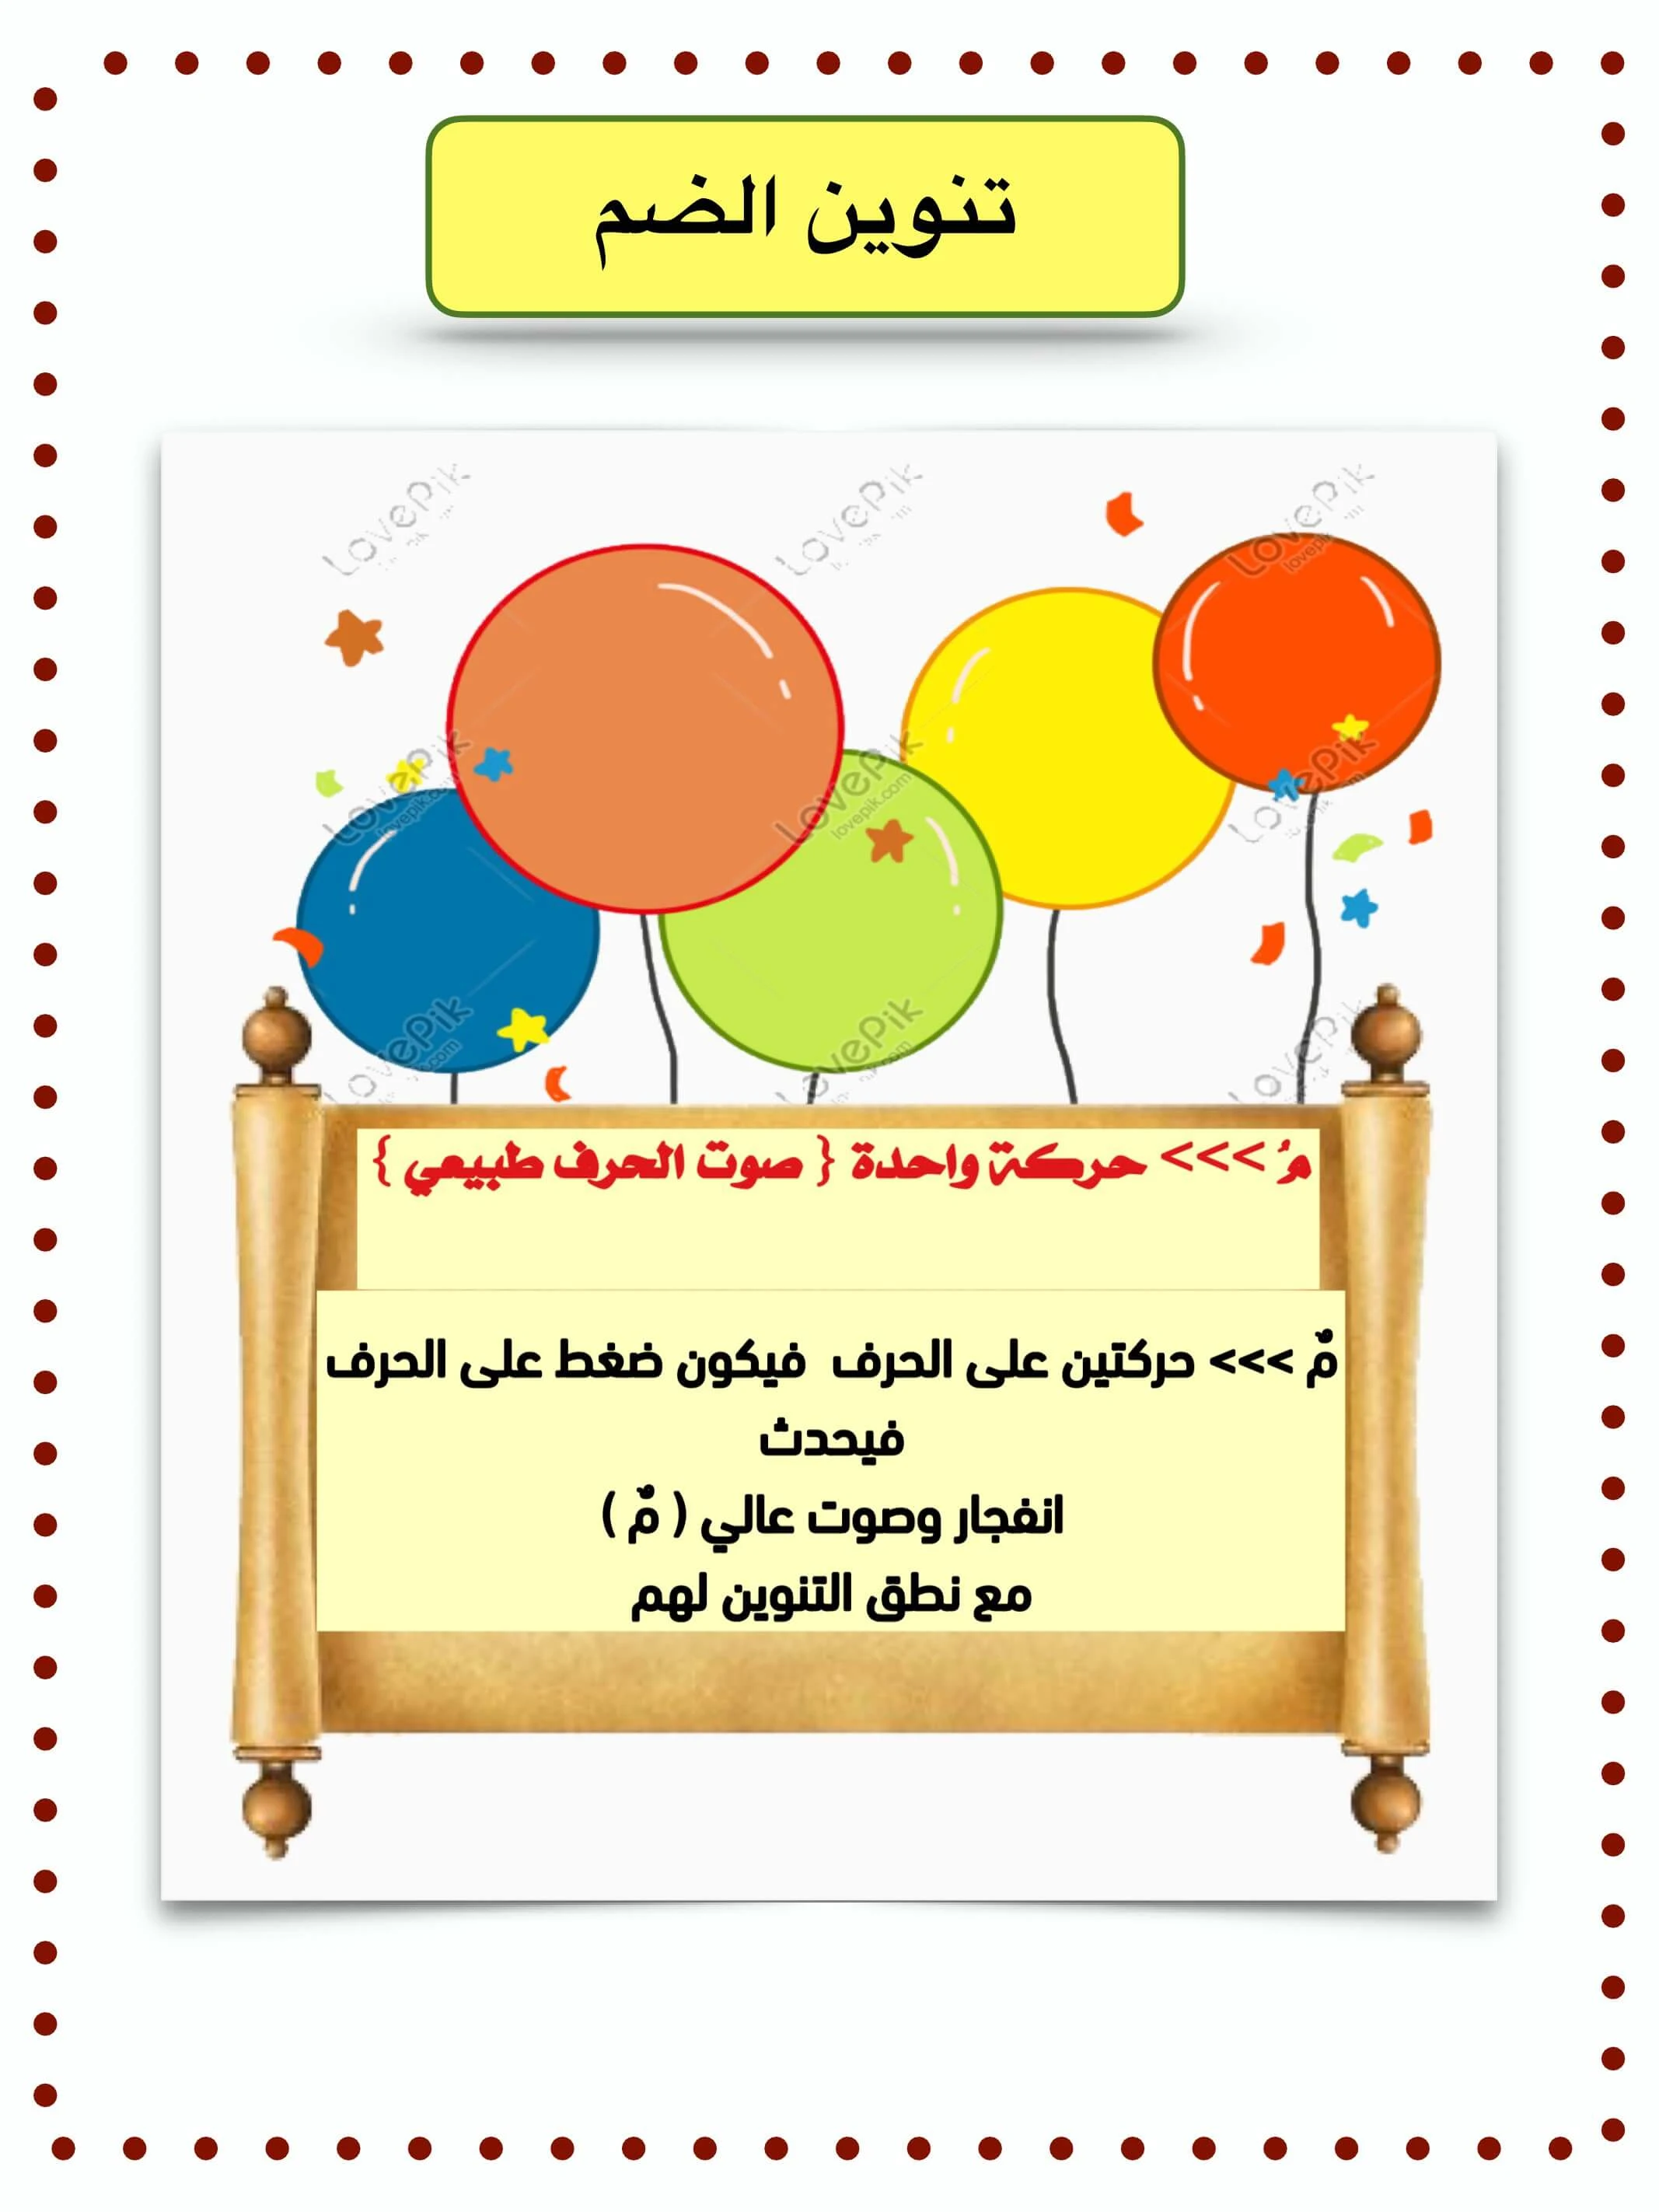 شرح مهارة التنوين في اللغة العربية للأطفال في الصف الأول PDF - تحميل مباشر مجانا